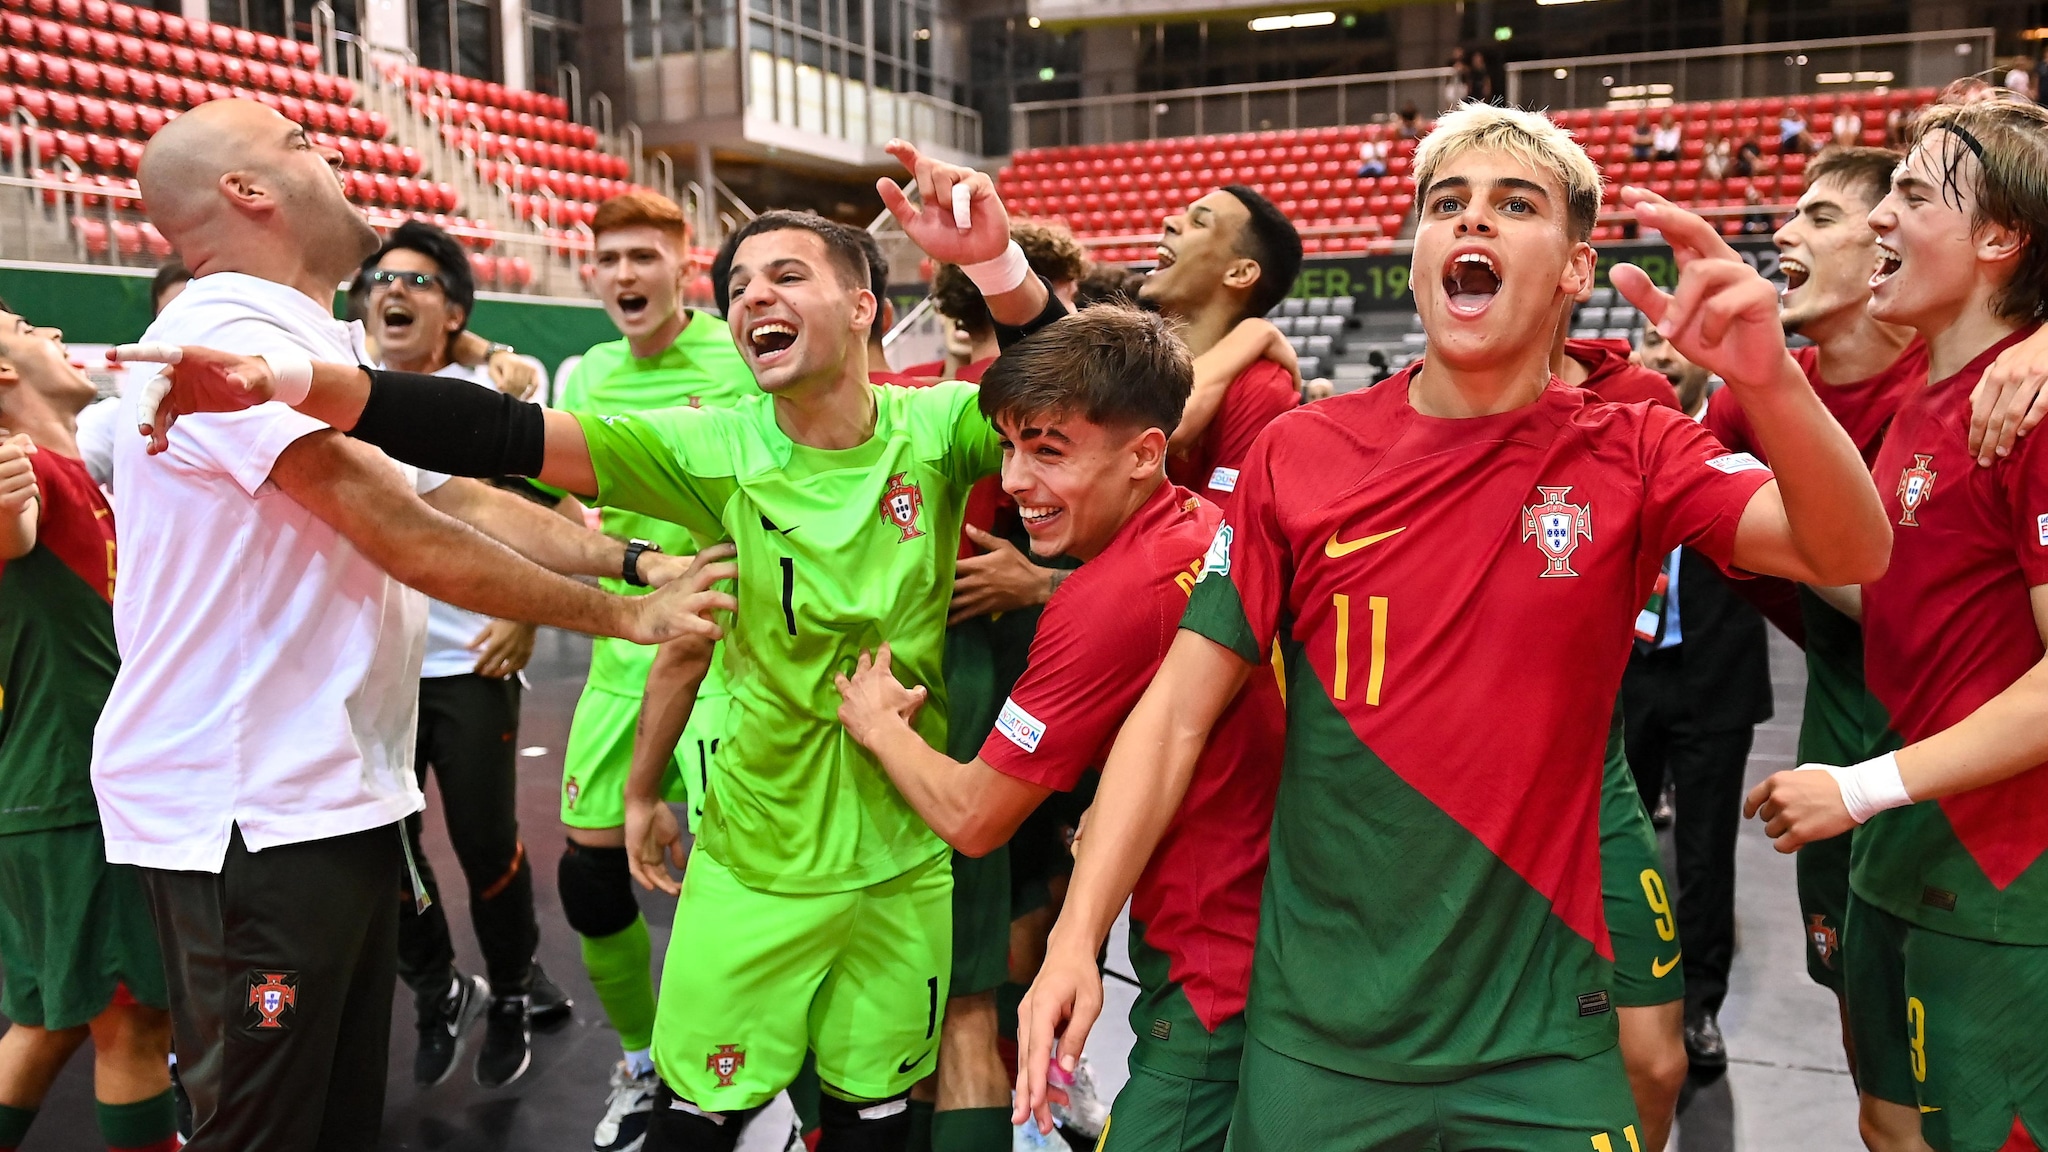 Destaques da Final do Euro Sub-19 de Futsal, Relatório: Portugal 6-2 Espanha |  Euro Futsal Sub-19